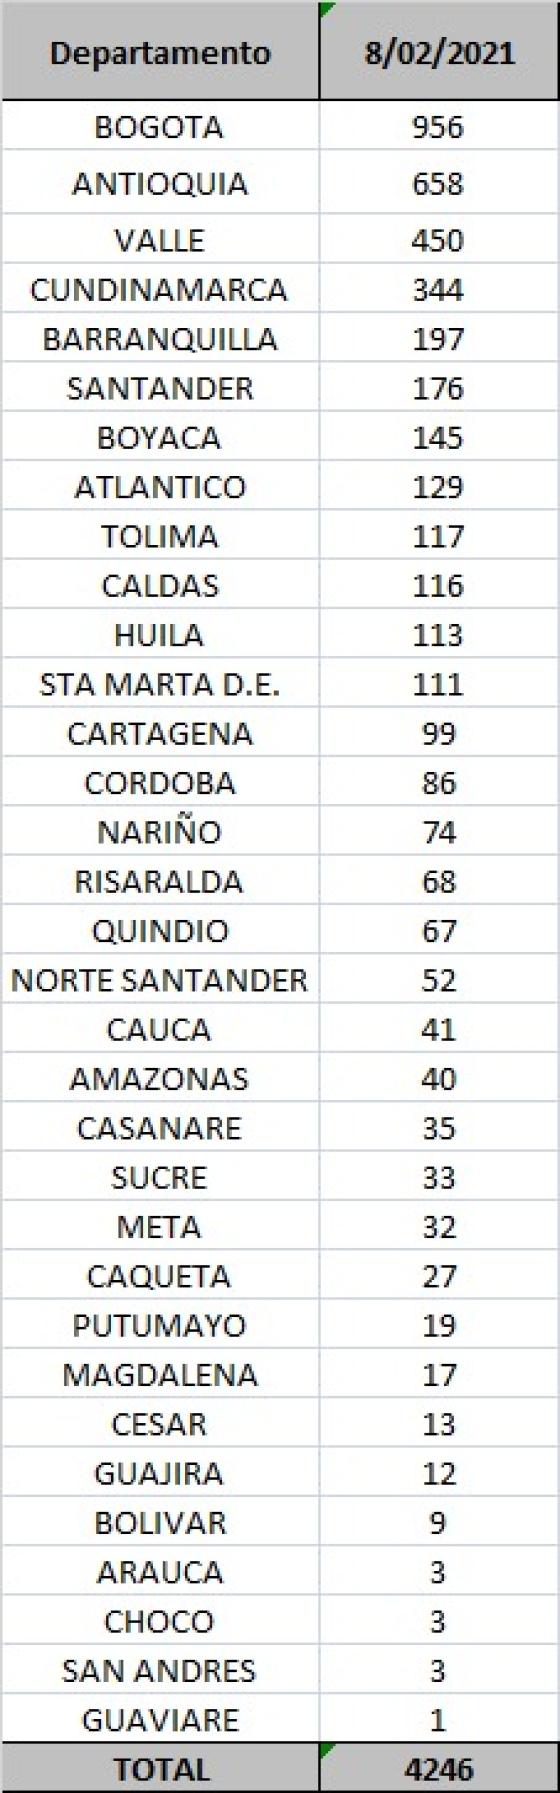 Casos nuevos de coronavirus en colombia por departamento 8 de febrero 2021